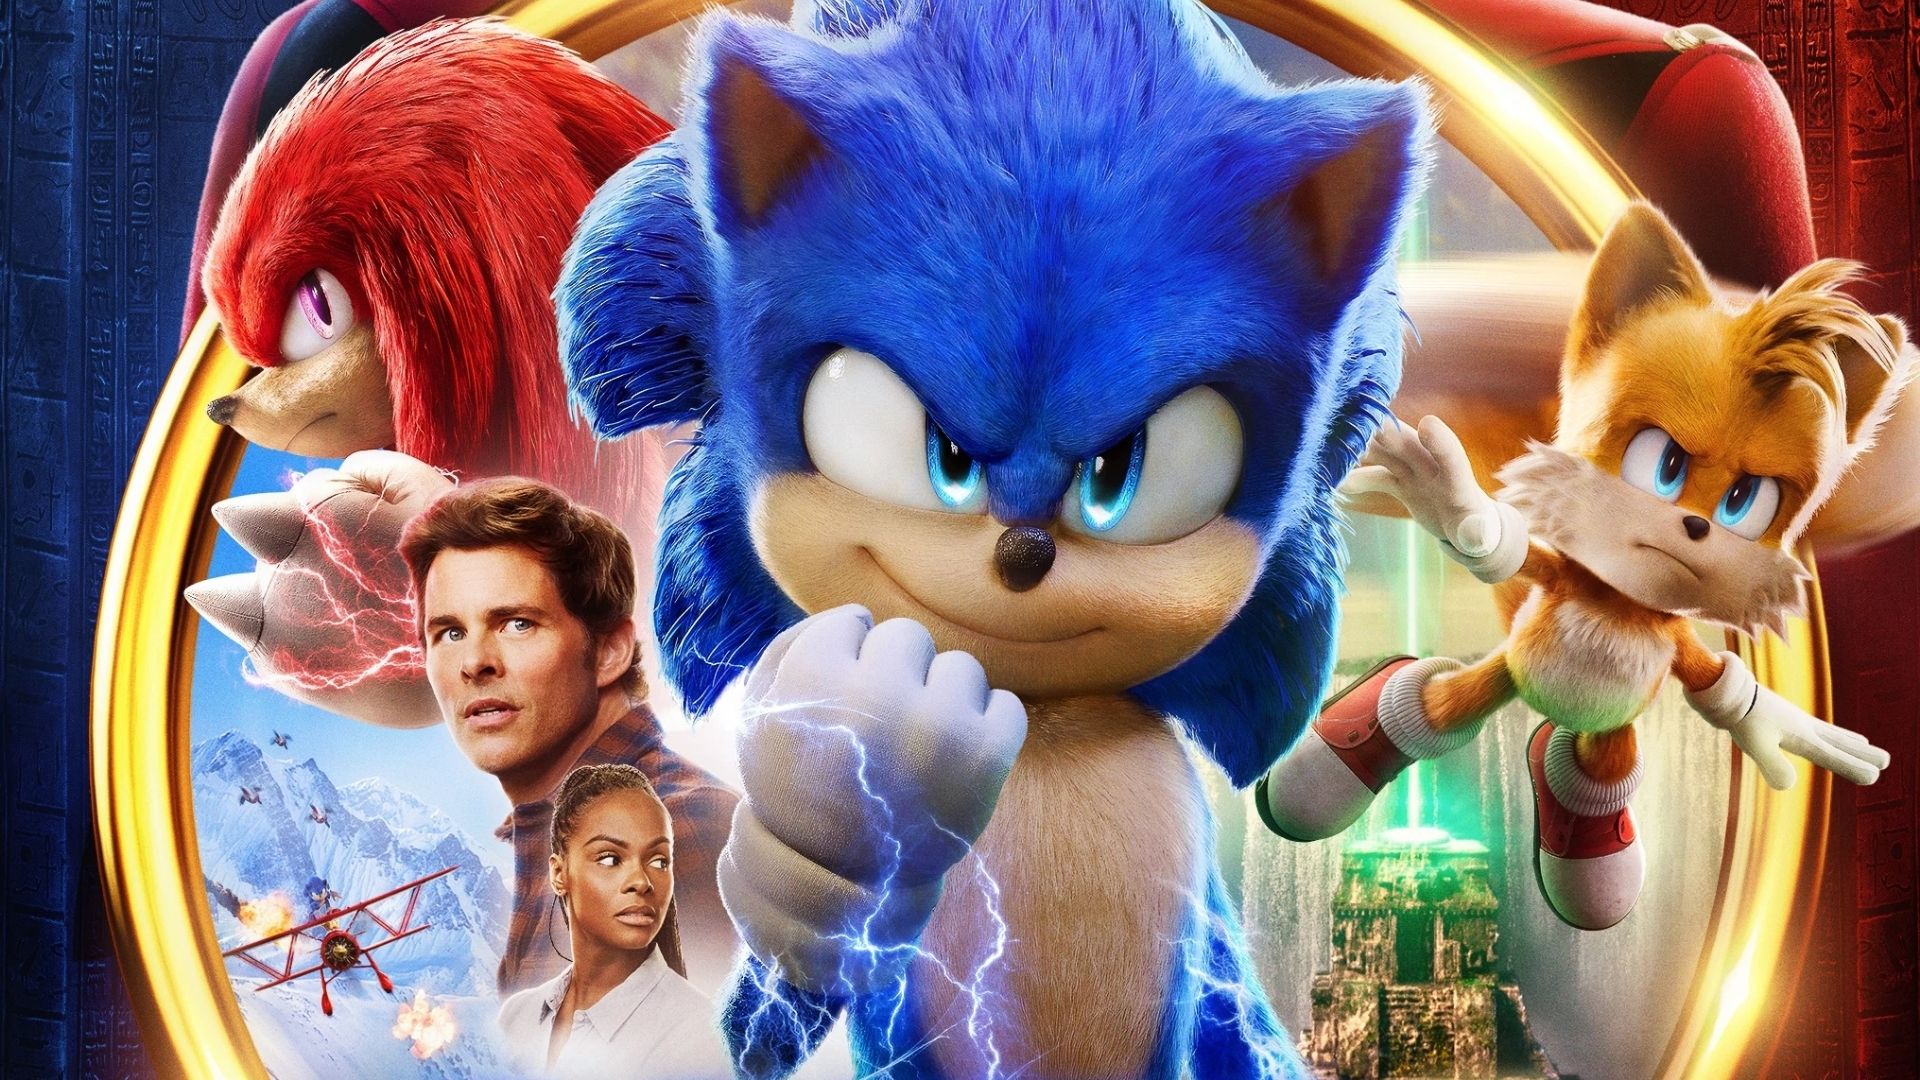 Portal Exibidor - Com campanha 360°, Paramount quer levar Sonic 2 – O Filme  para todas as famílias